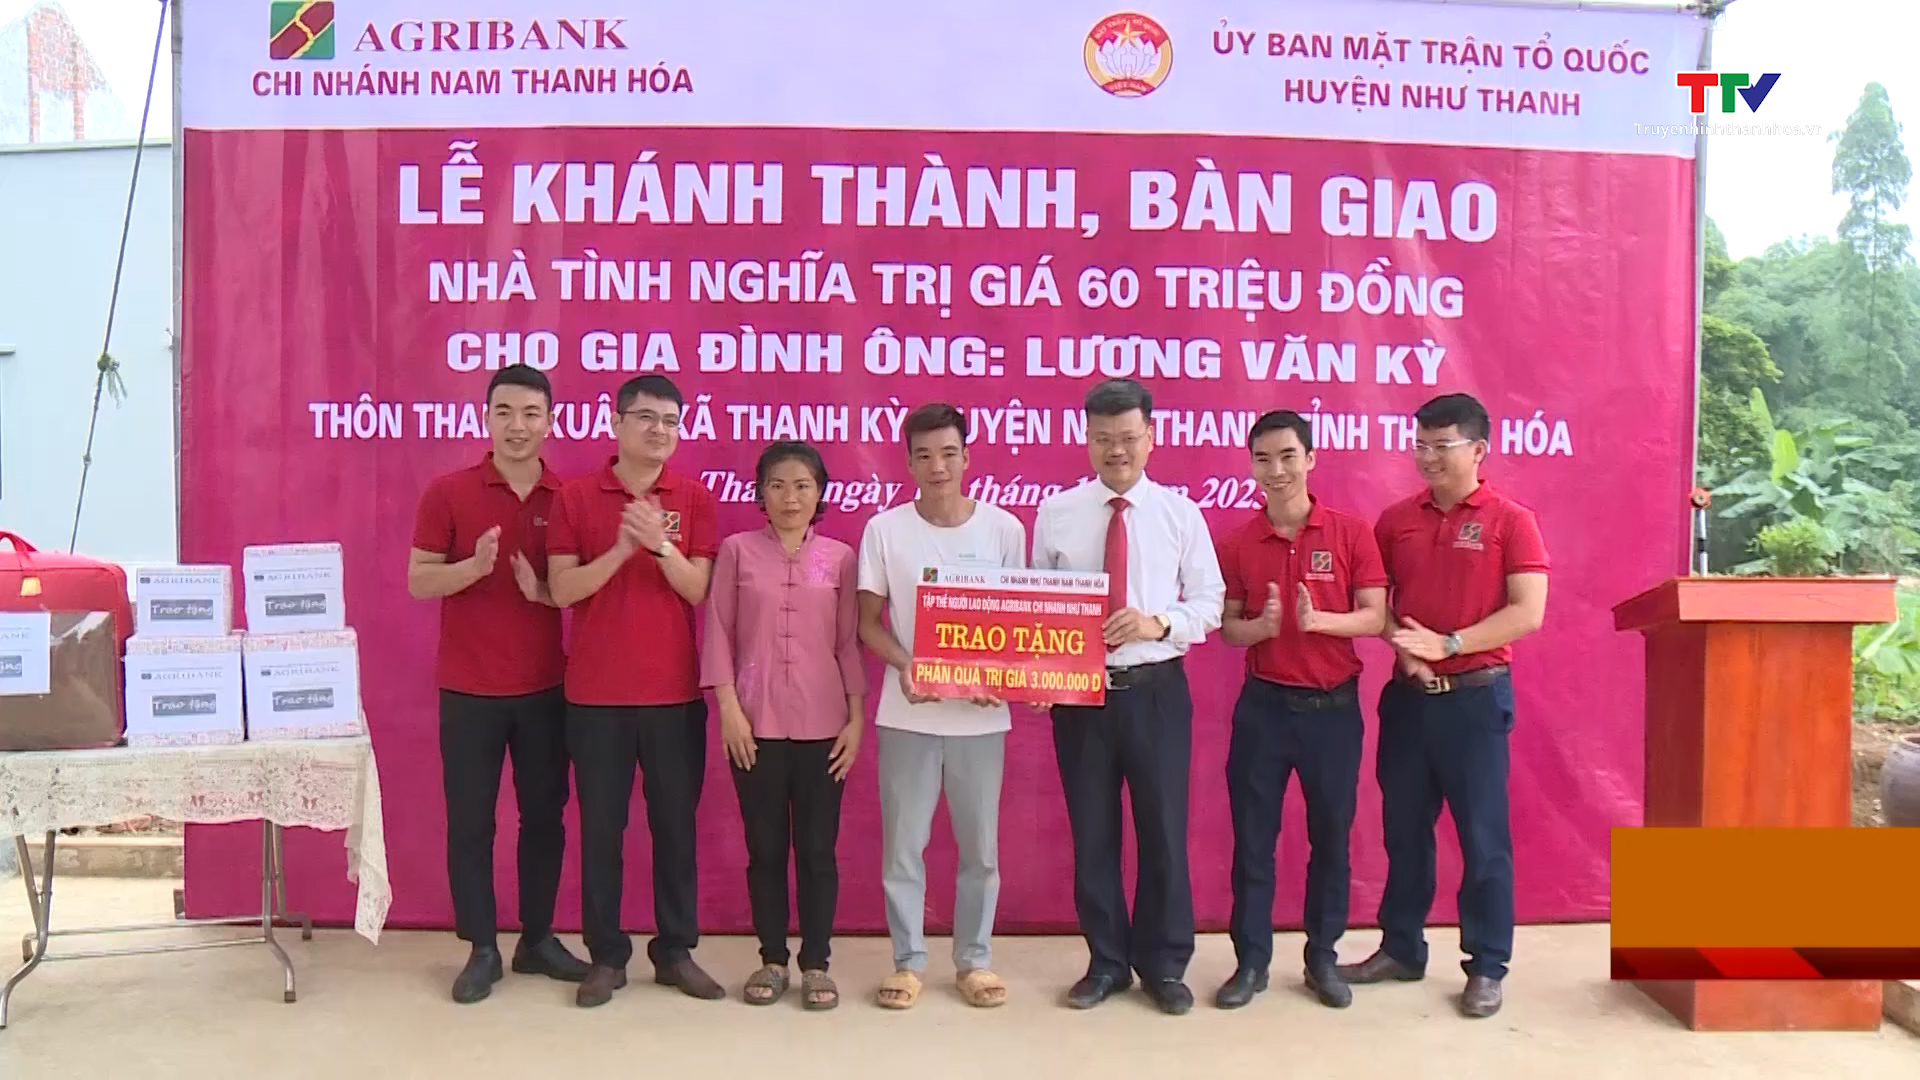 Agribank Nam Thanh Hóa chung sức vì cộng đồng- Ảnh 4.